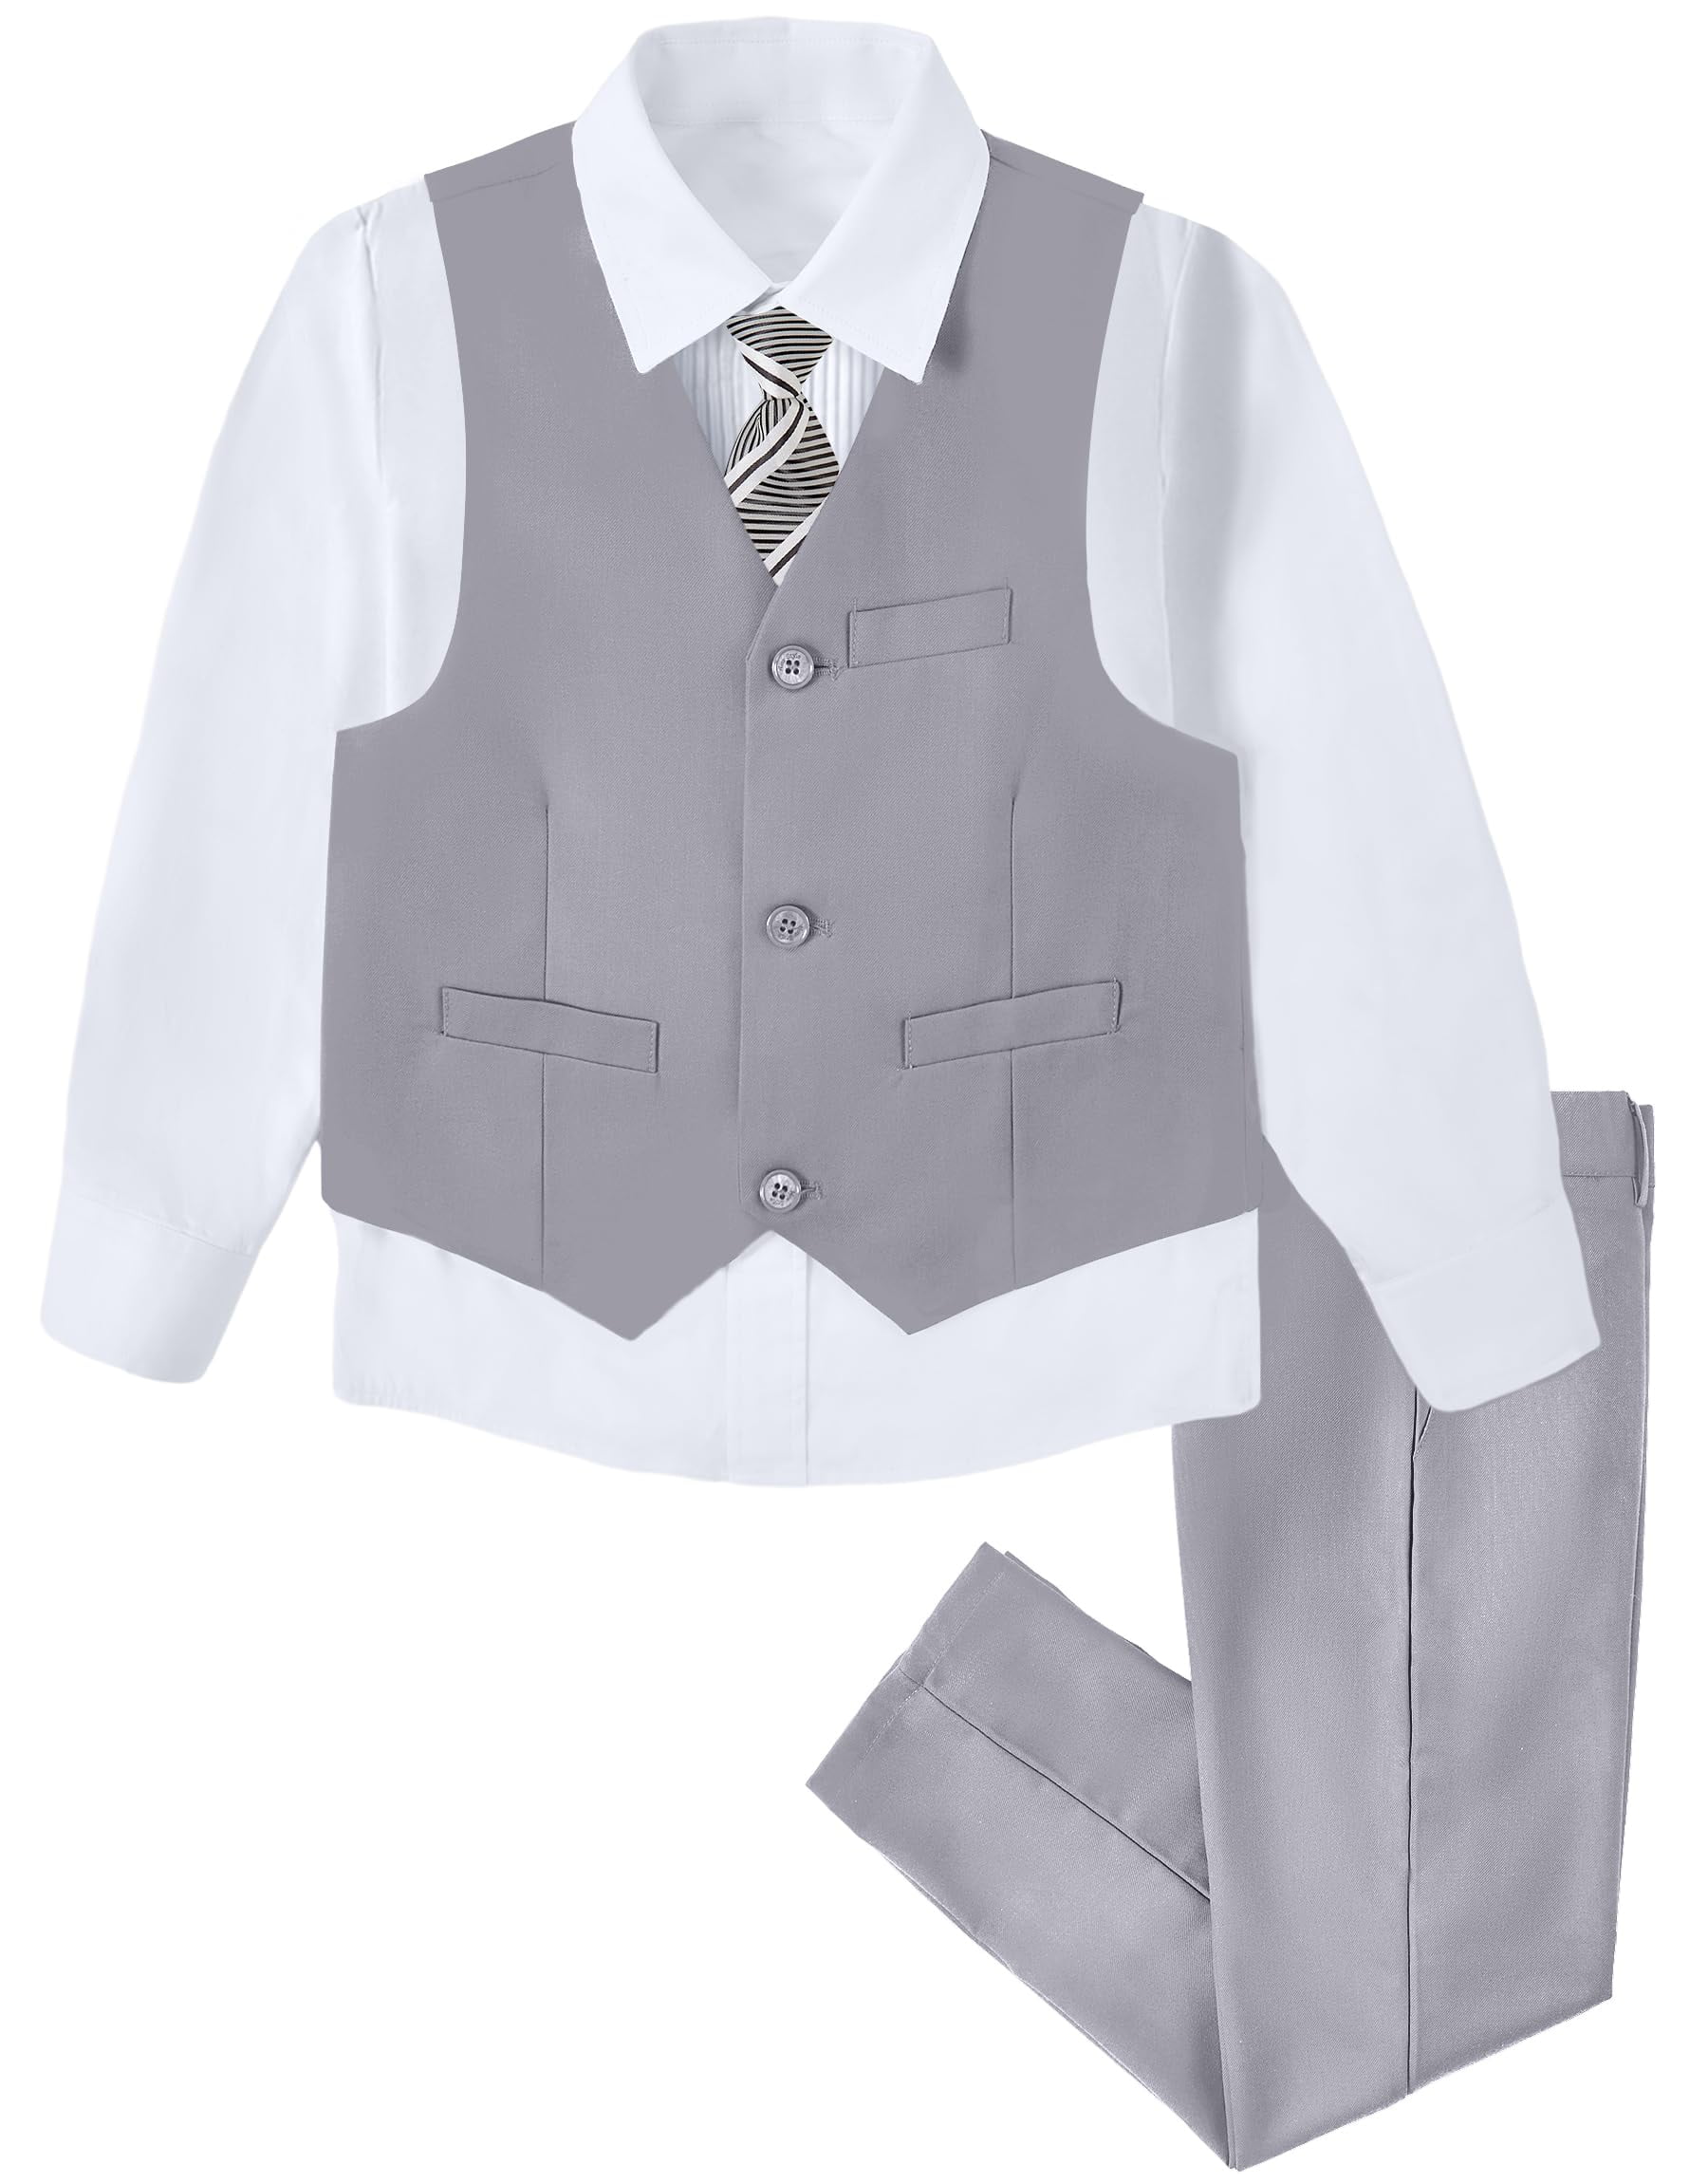 MOSEDOU 4pcs Boys Gentleman Outfits Long Sleeve Bowtie&Shirt&Pants&Vest ...